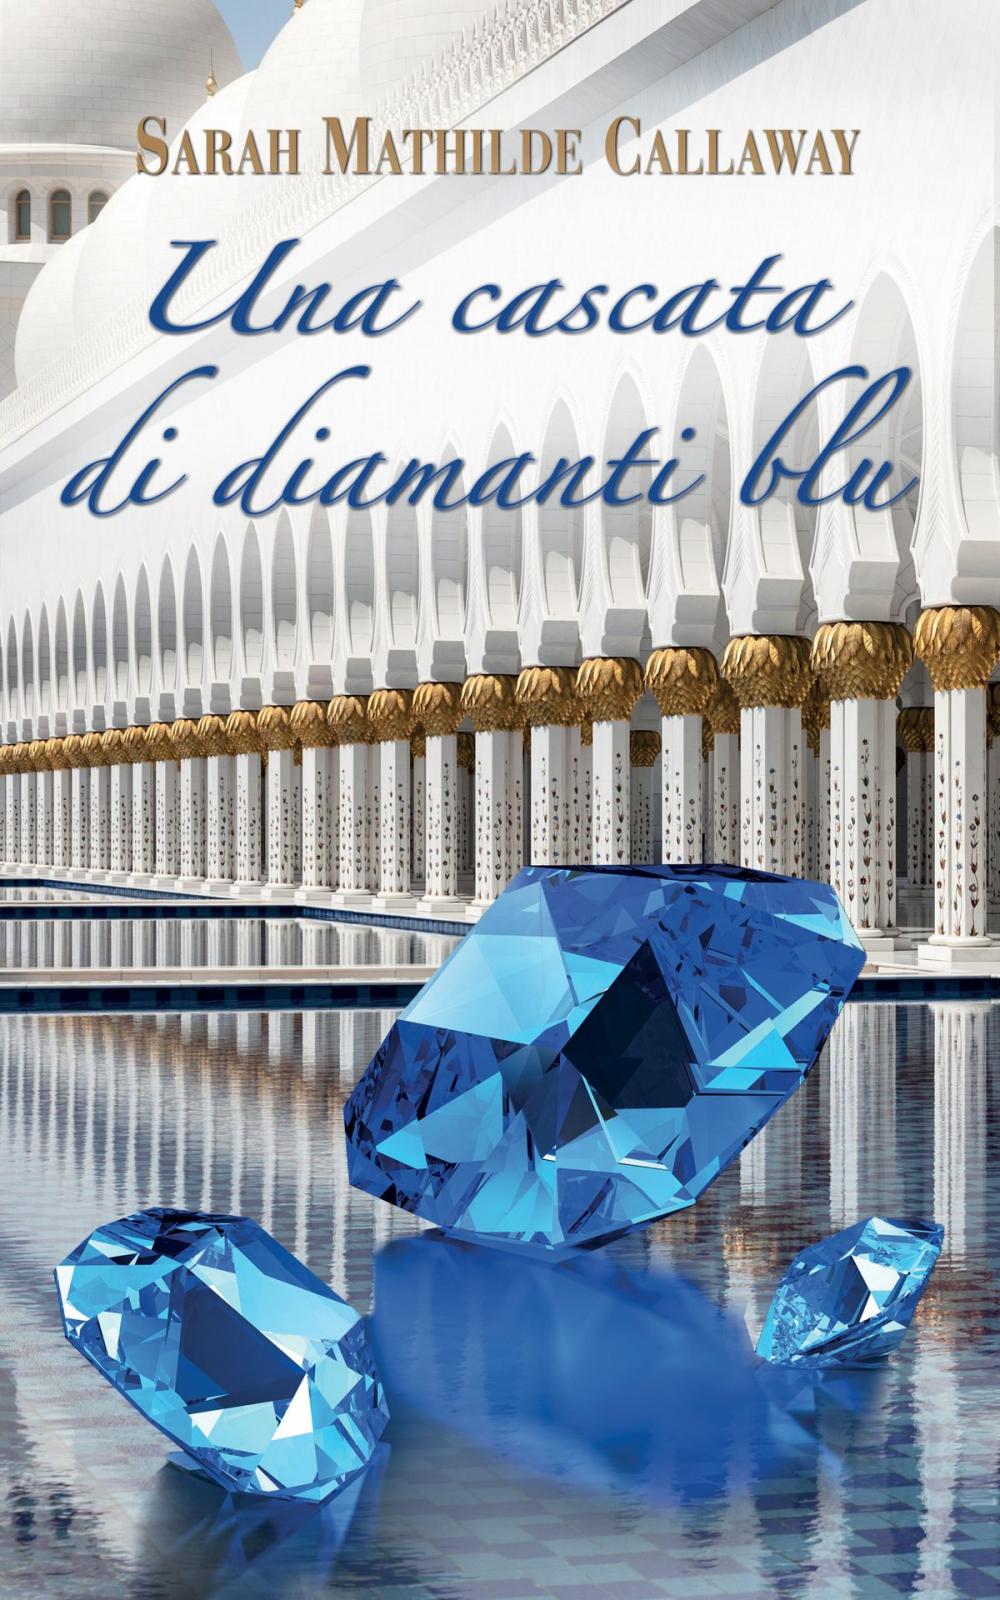 Big bigCover of Una cascata di diamanti blu